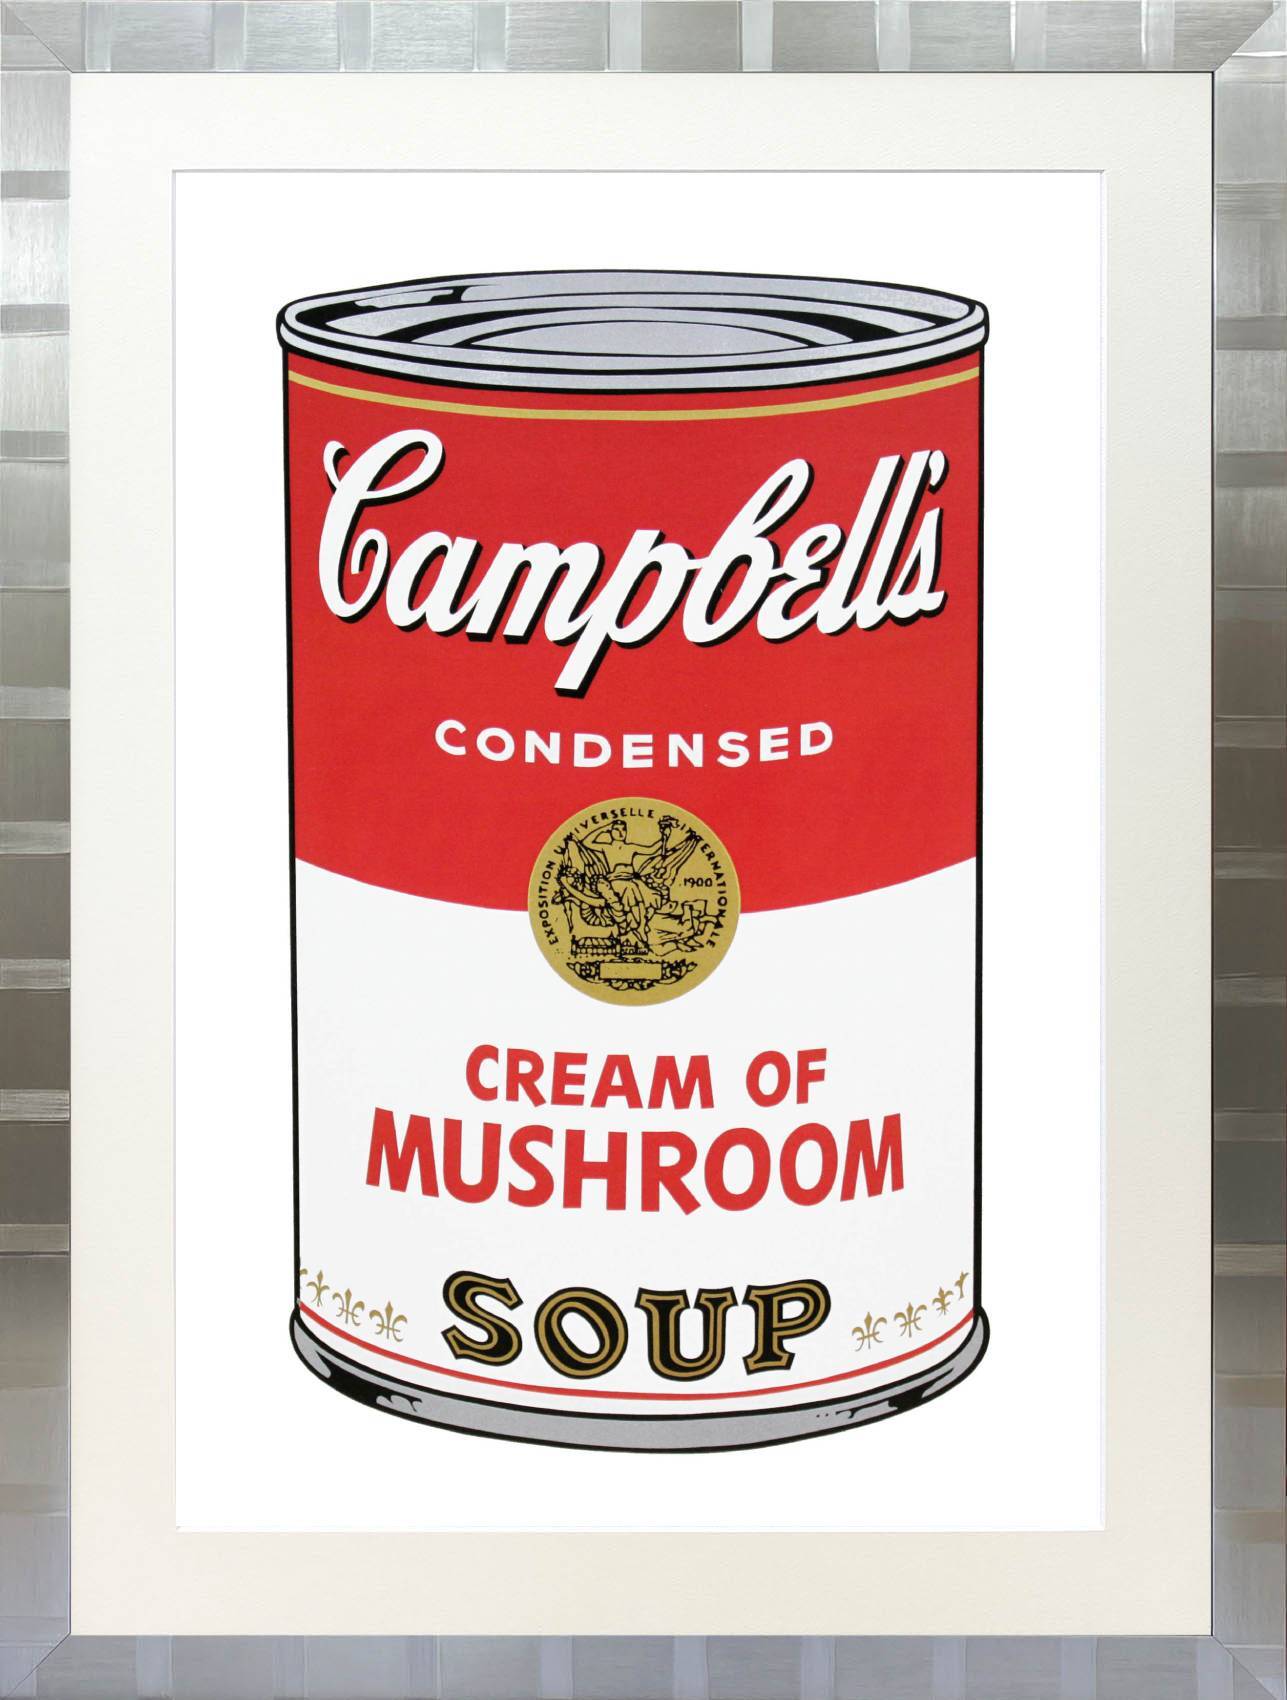 アンディ・ウォーホル「キャンベル・スープ(マッシュルーム)1968」展示用フック付大型サイズジークレ ポップアート 絵画